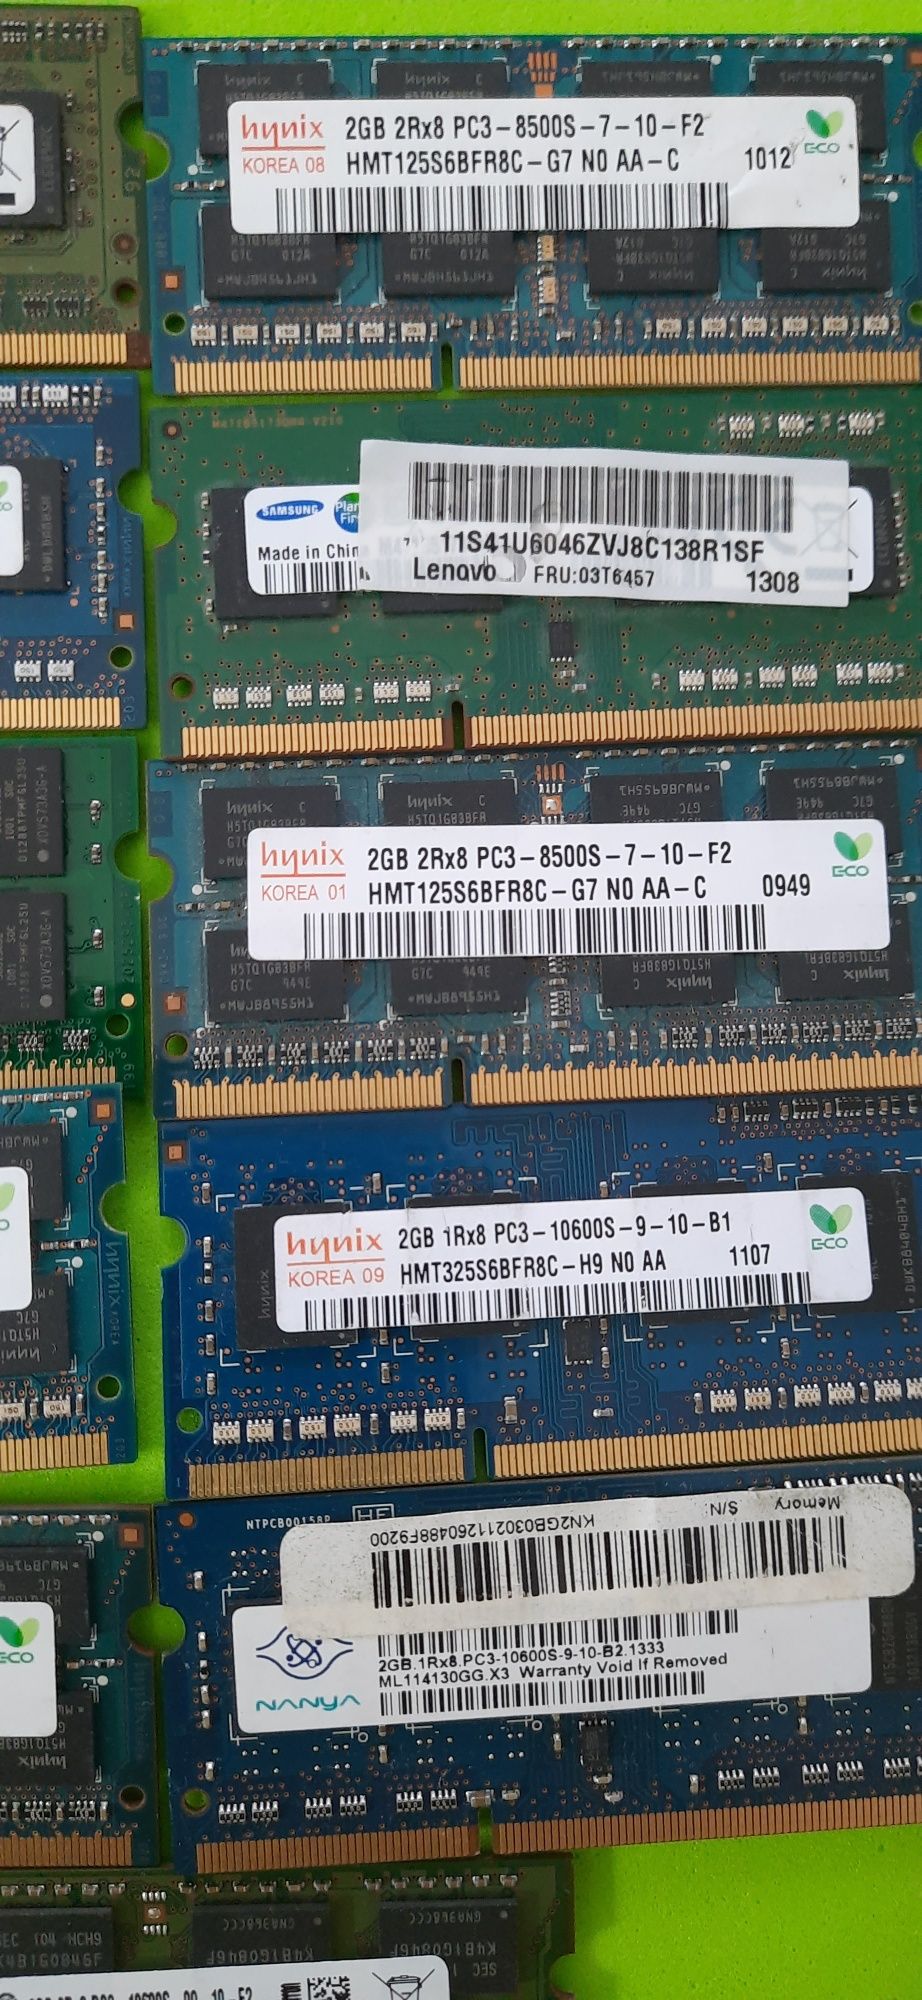 Memorias/Rams SO-DIMM de 2Gb DDR3  P/PORTÁTIL - Unid.